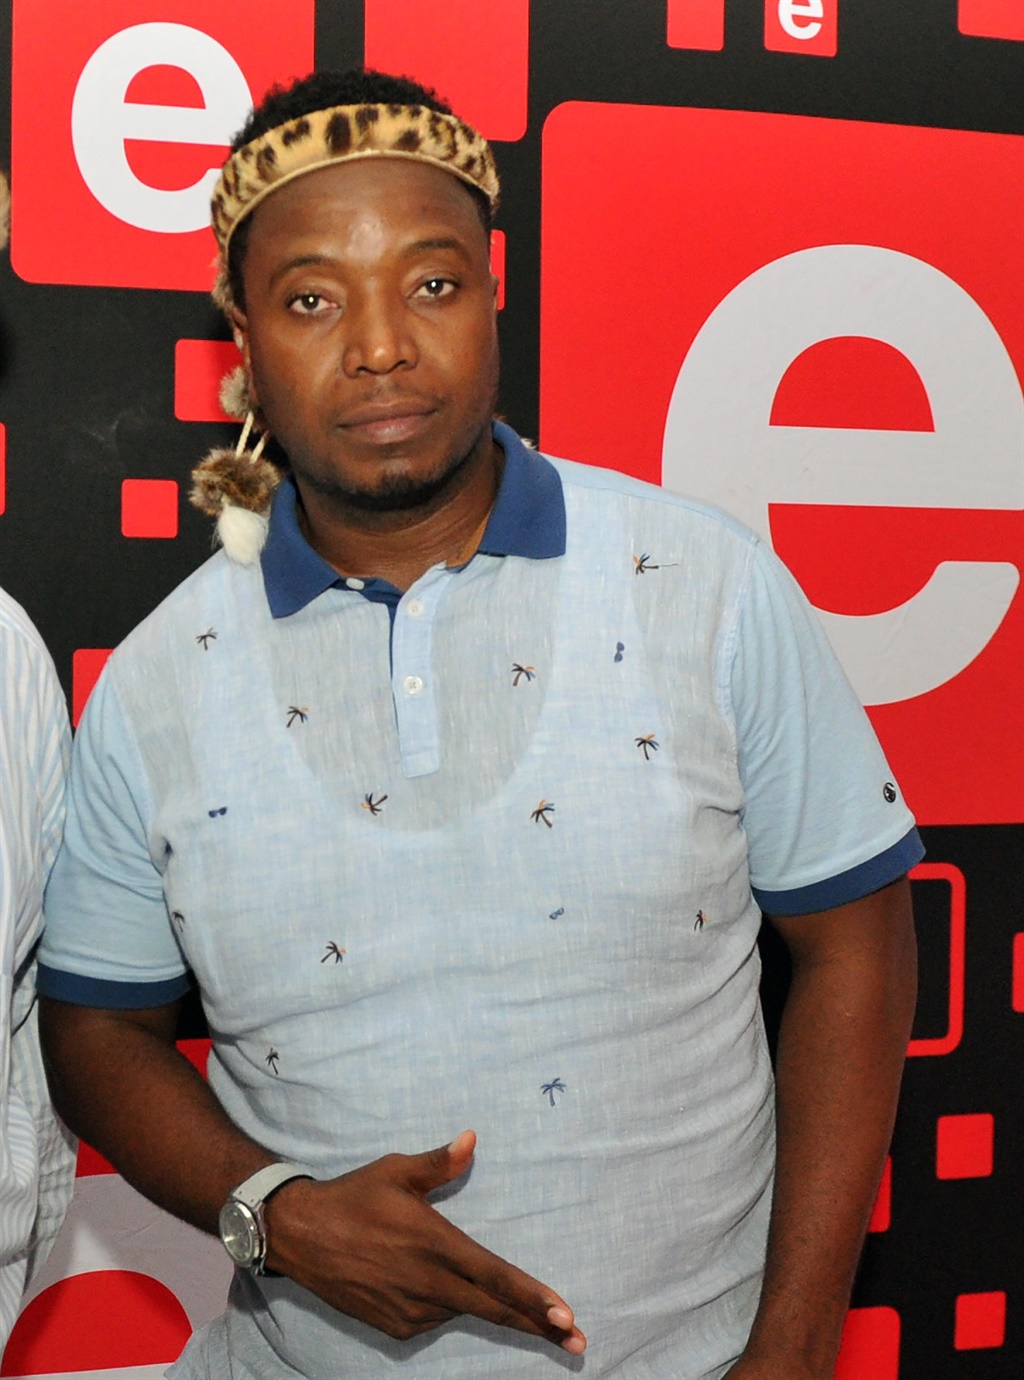 Ukhozi FM DJ Tshatha Ngobe. Photo by Jabulani Langa